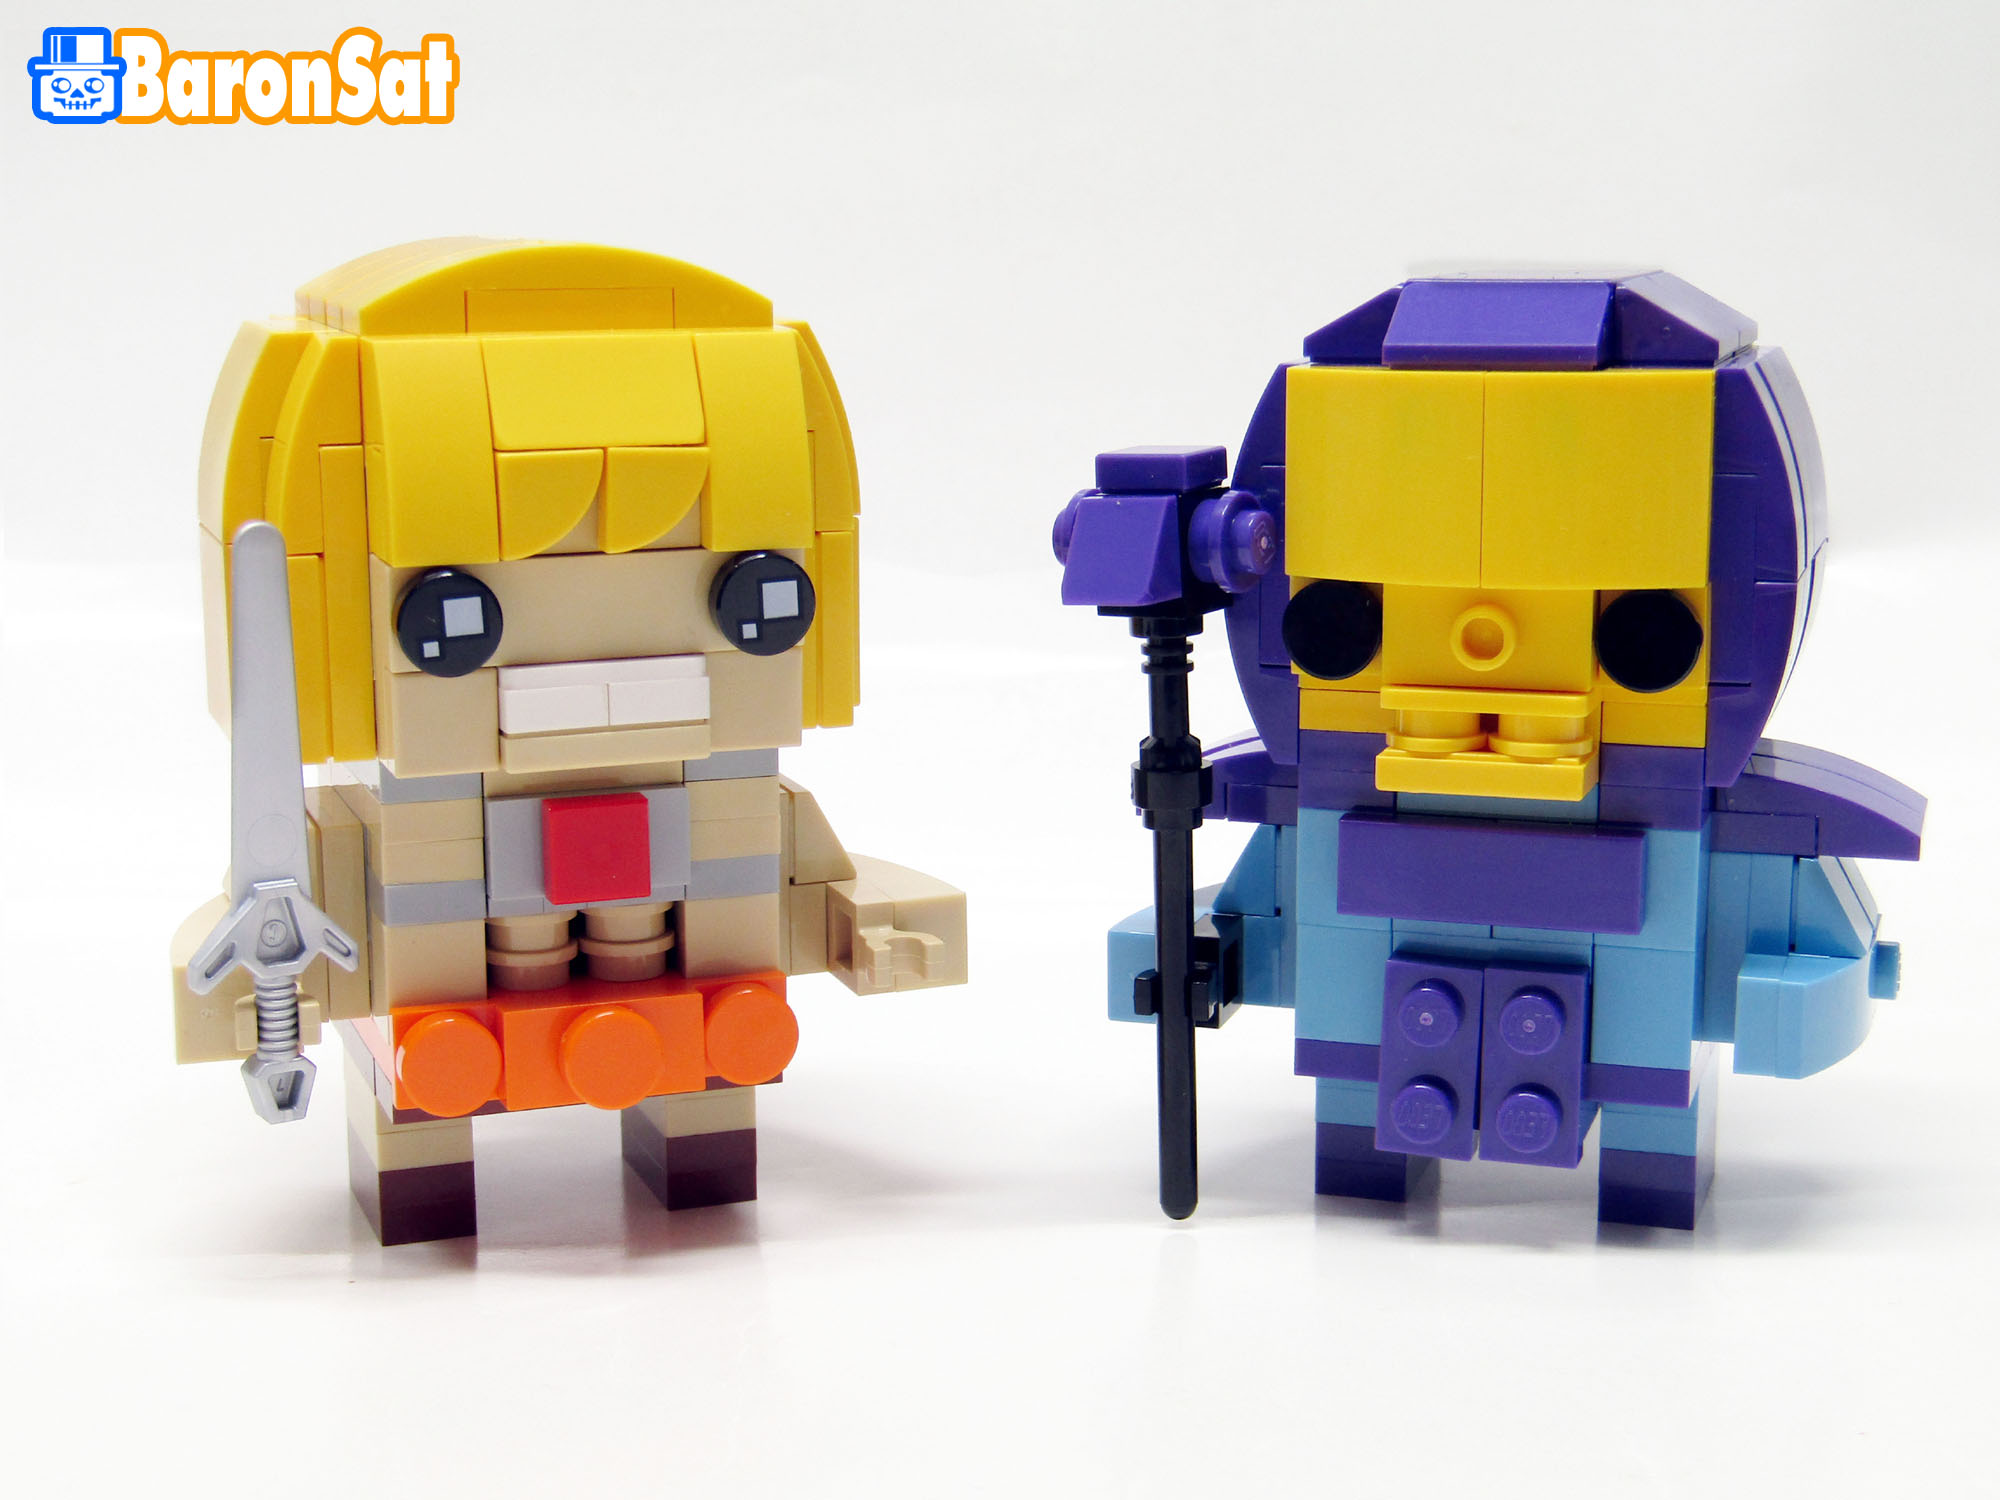 Lego-moc-Masters-of-the-Universe-Brickheadz-models